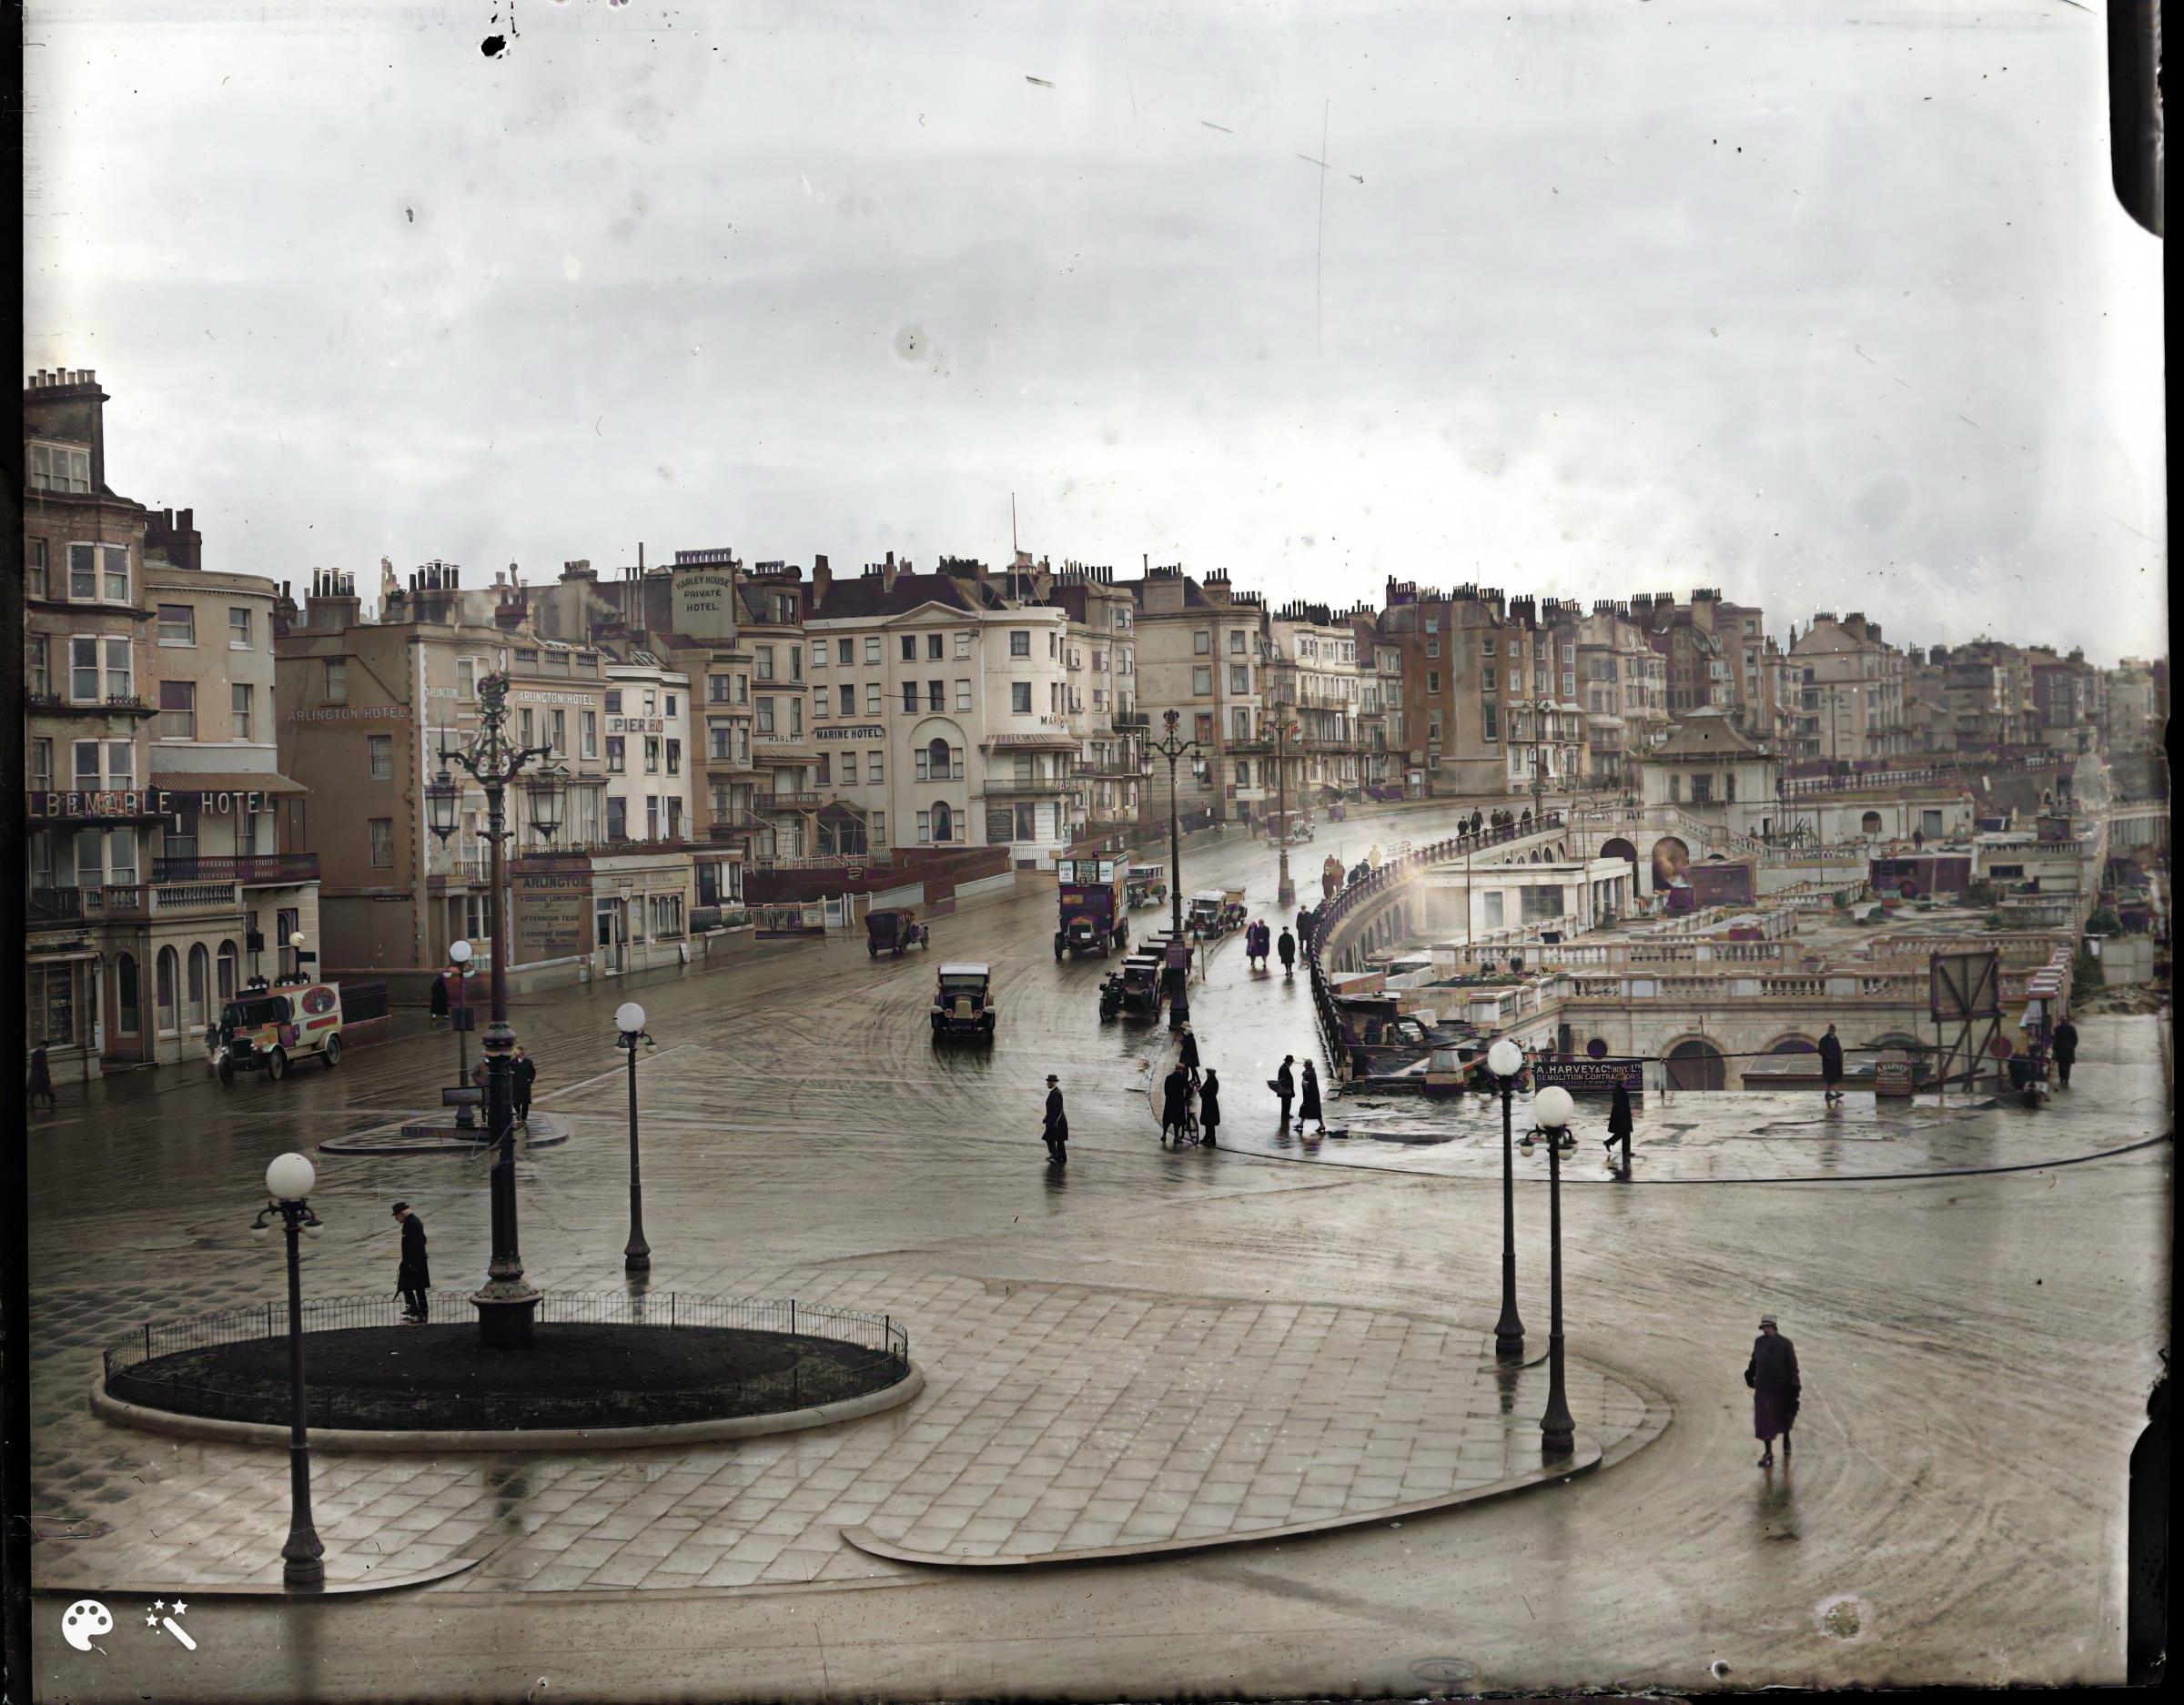 The Aquarium roundabout, Brighton, circa 1930